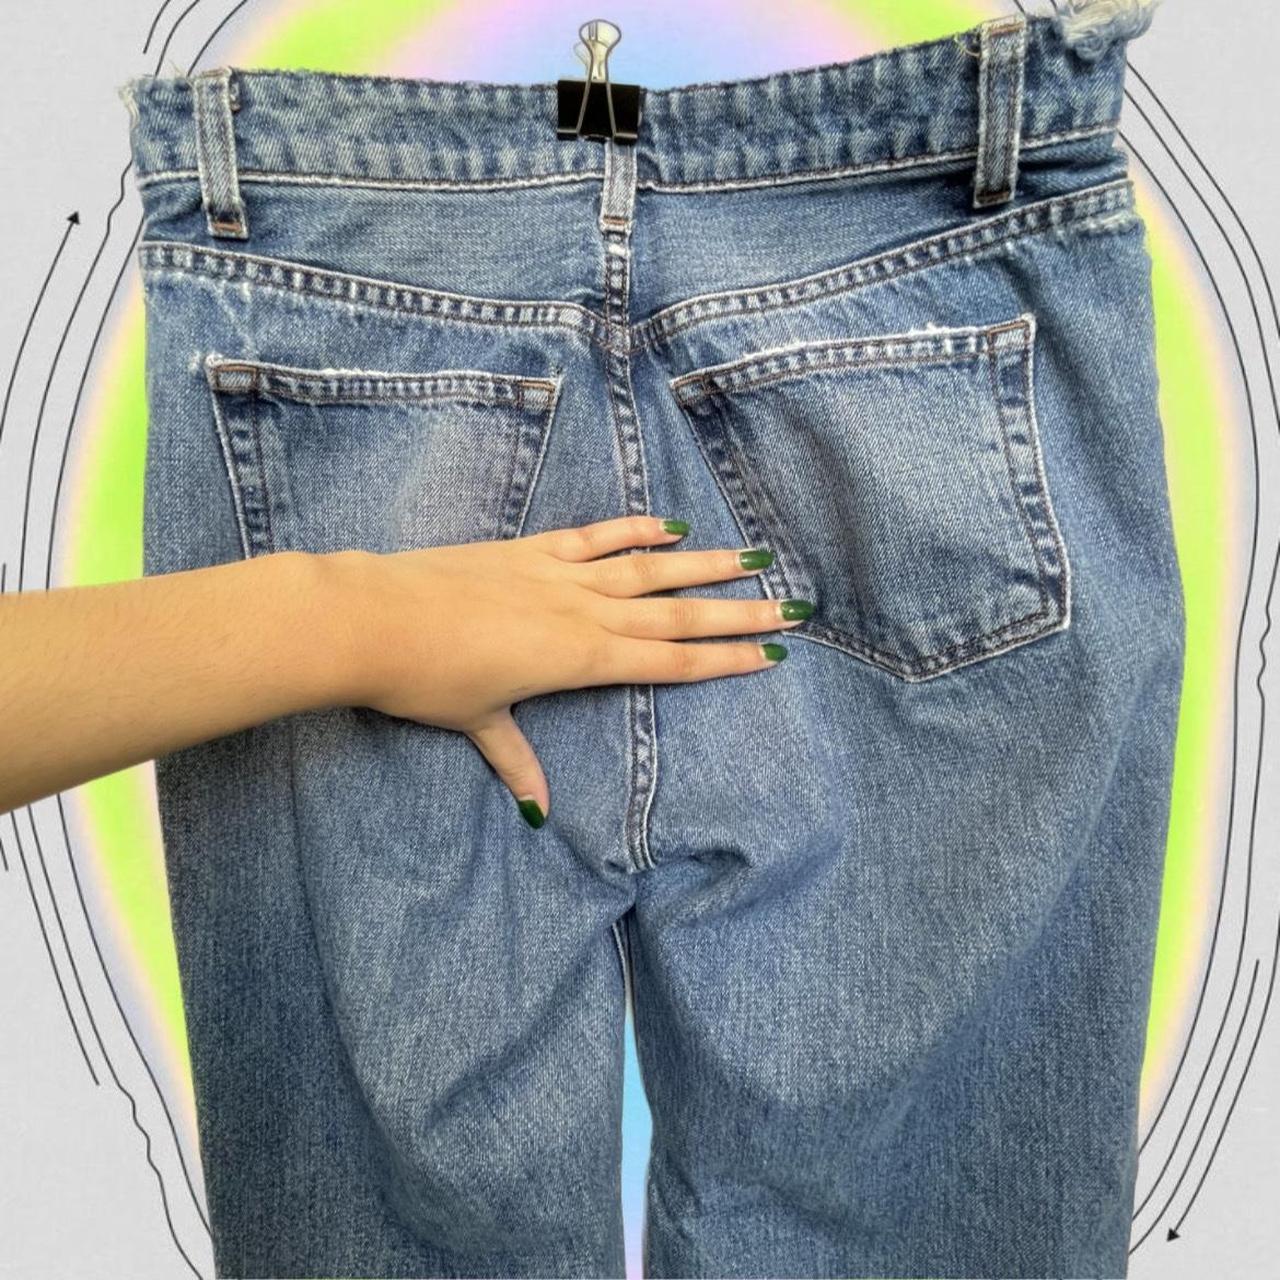 Reformation Fawcett jeans in Celtic 👱‍♀️ Size 27, true... - Depop